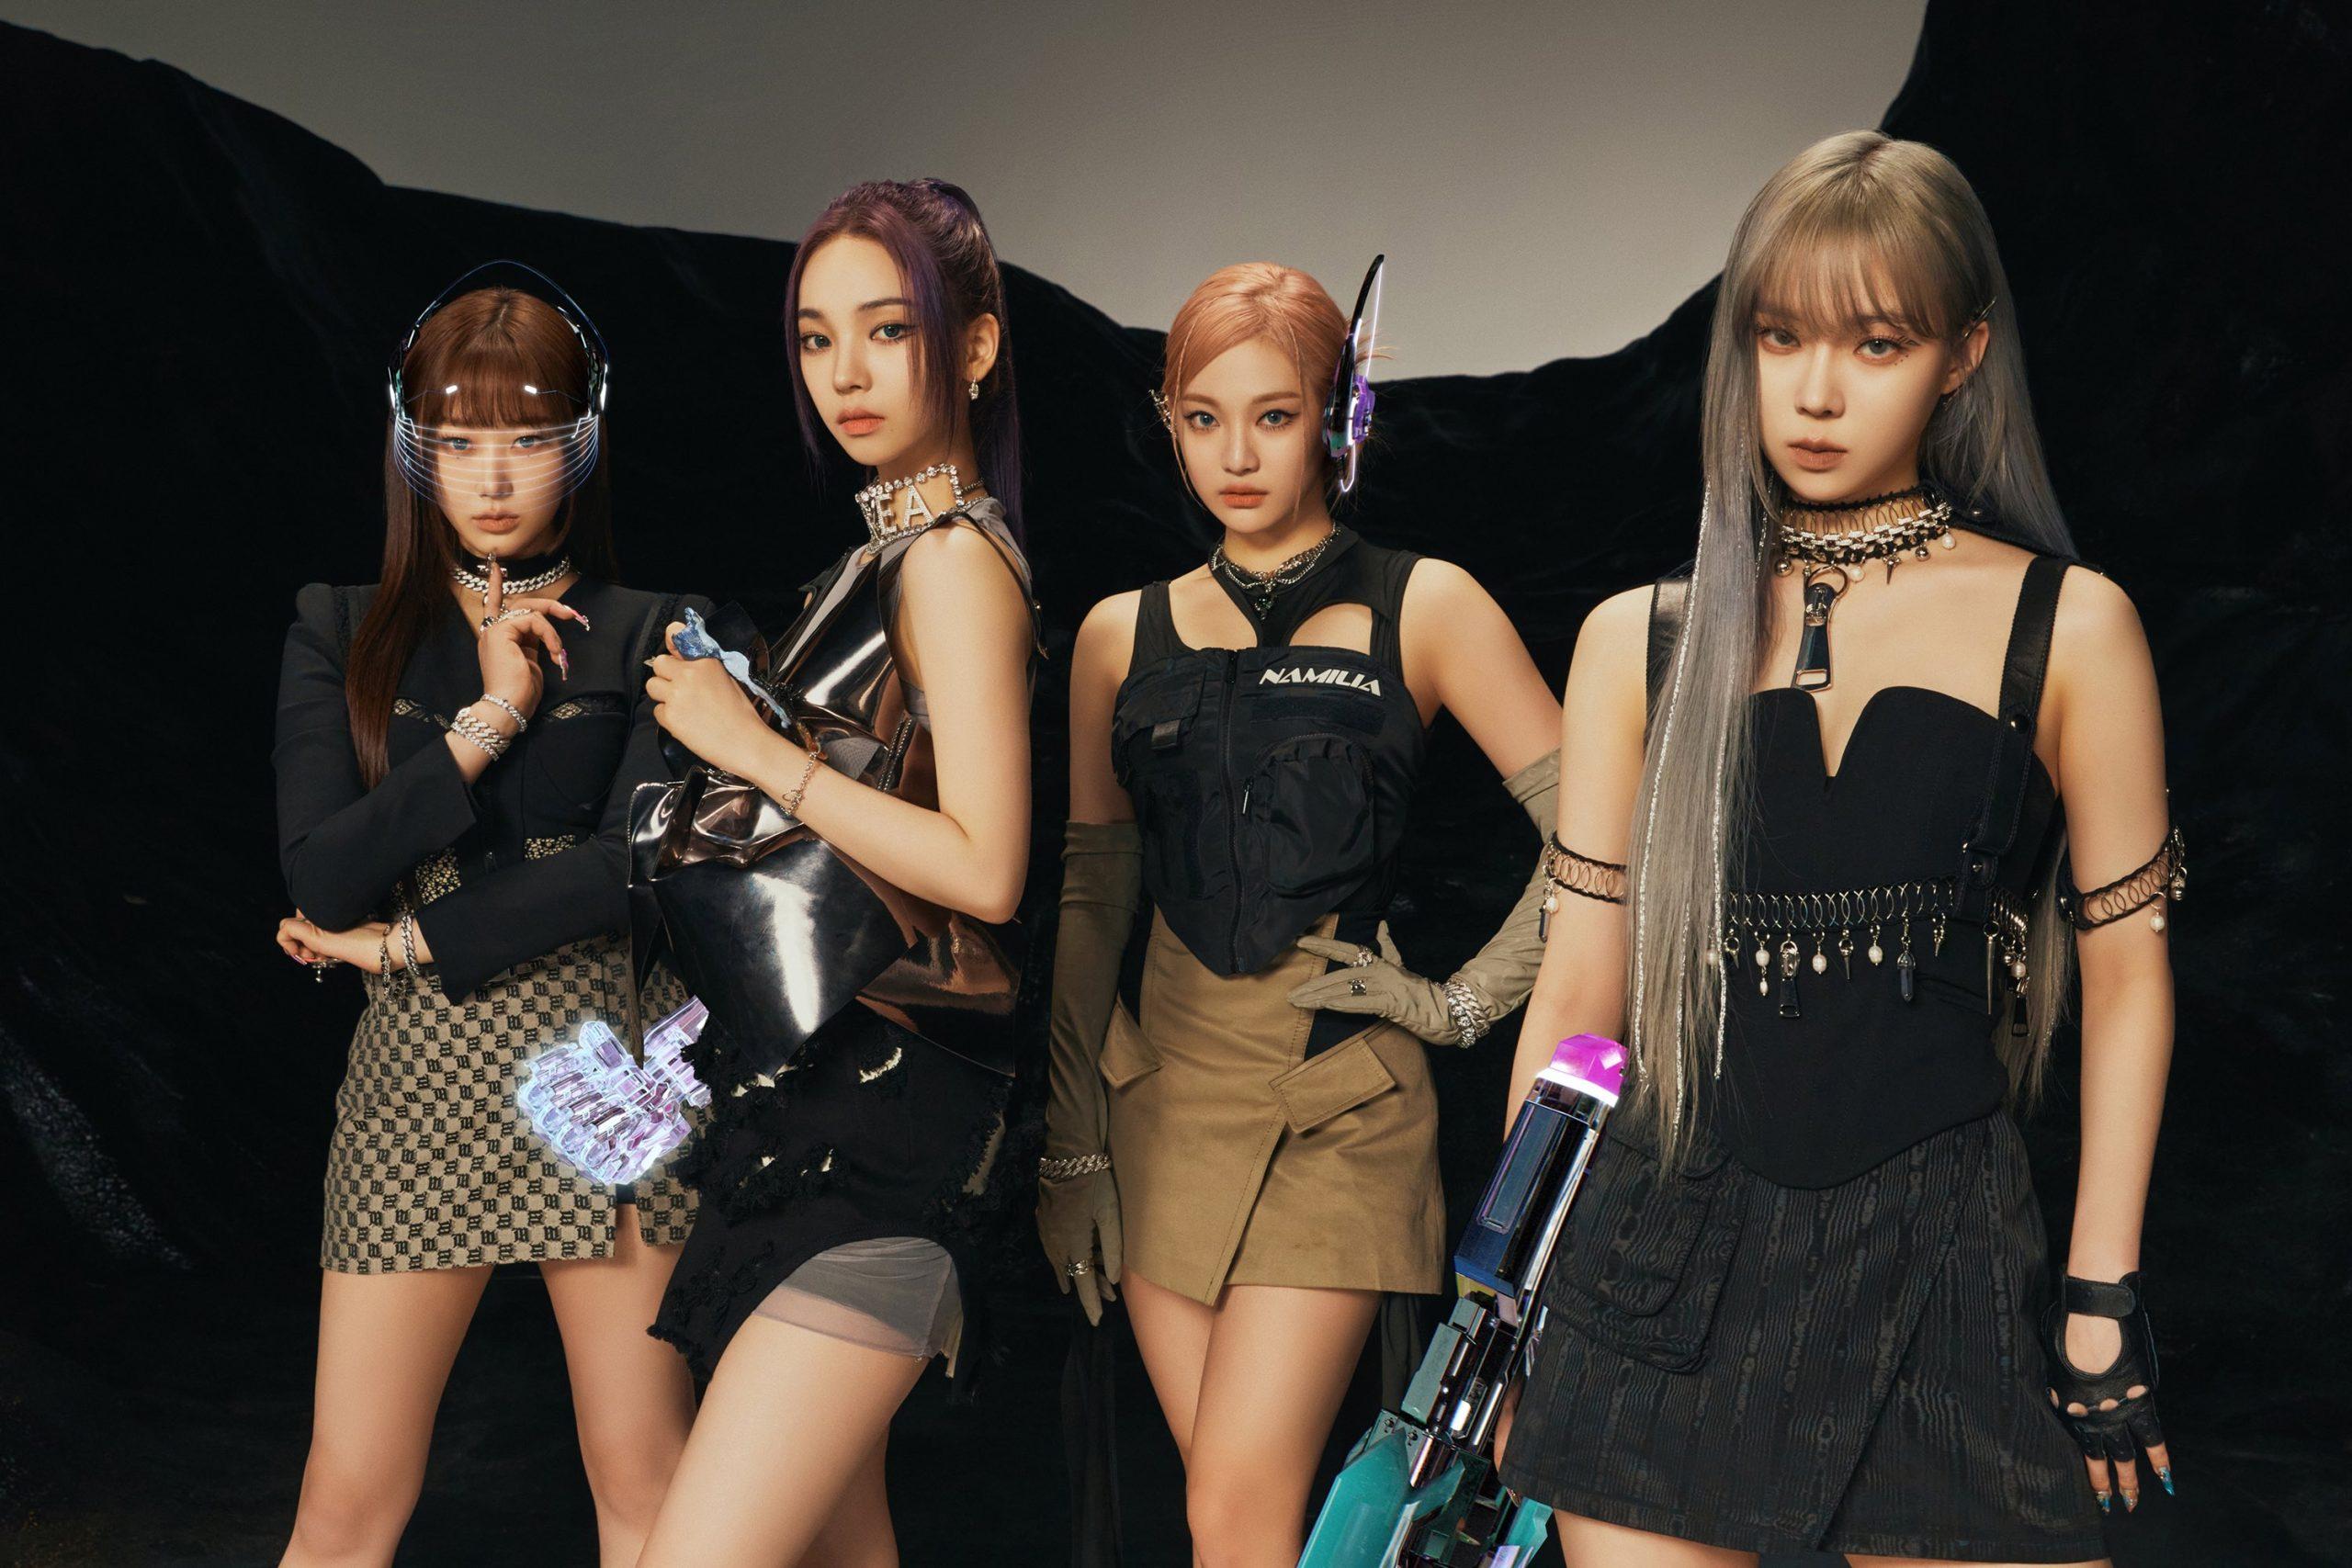 aespa đã chính thức comeback với mini album thứ 2 rất được mong đợi của họ, 'Girls', và ca khúc chủ đề cùng tên (Ảnh: Internet)